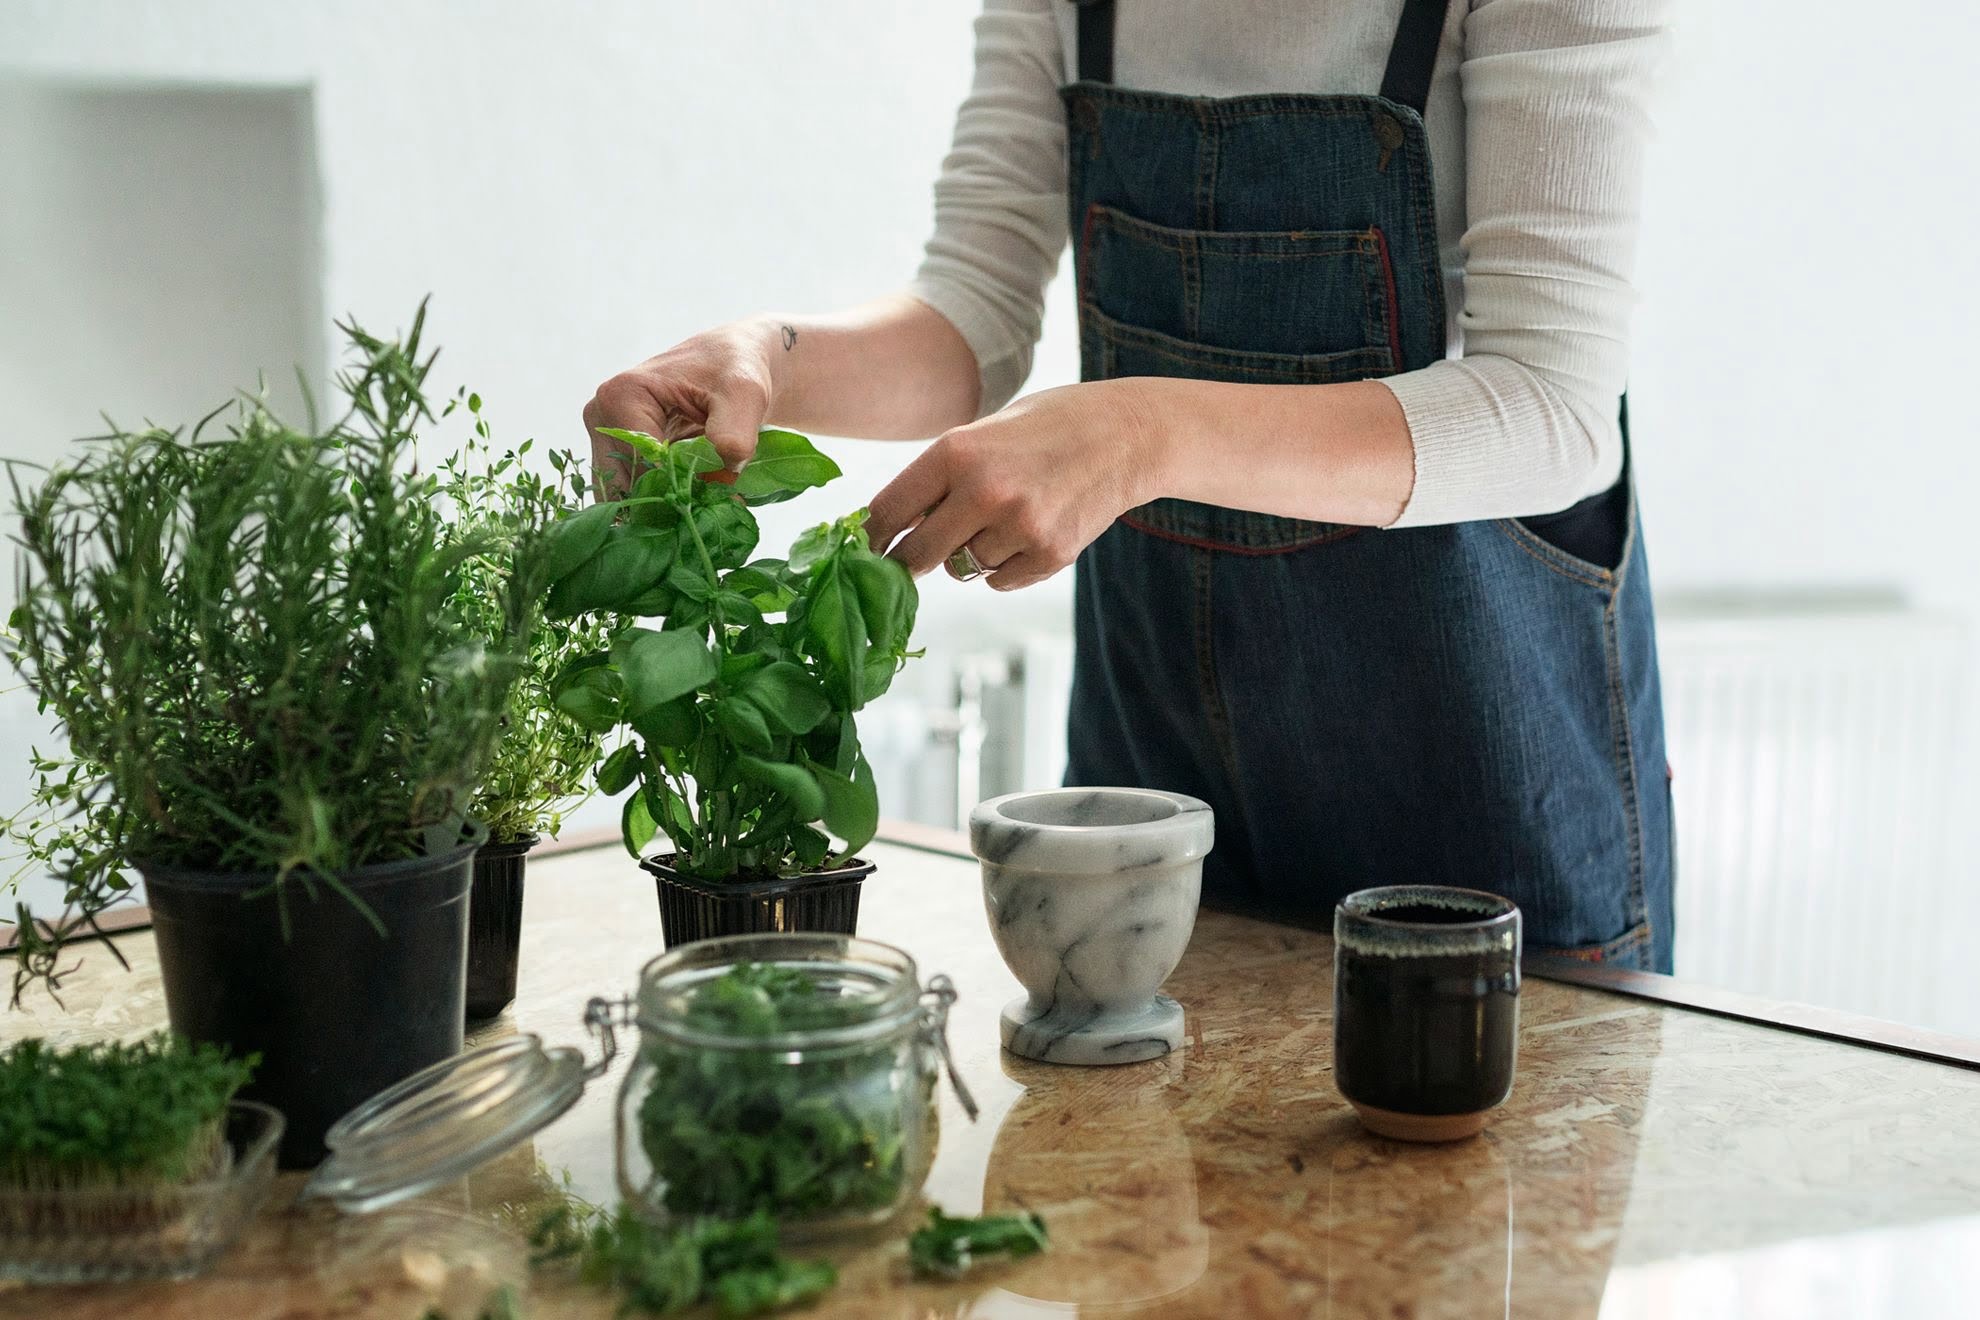 Evde kendi olanaklarıyla bitki yetiştirmek isteyenlere 5 öneri #1